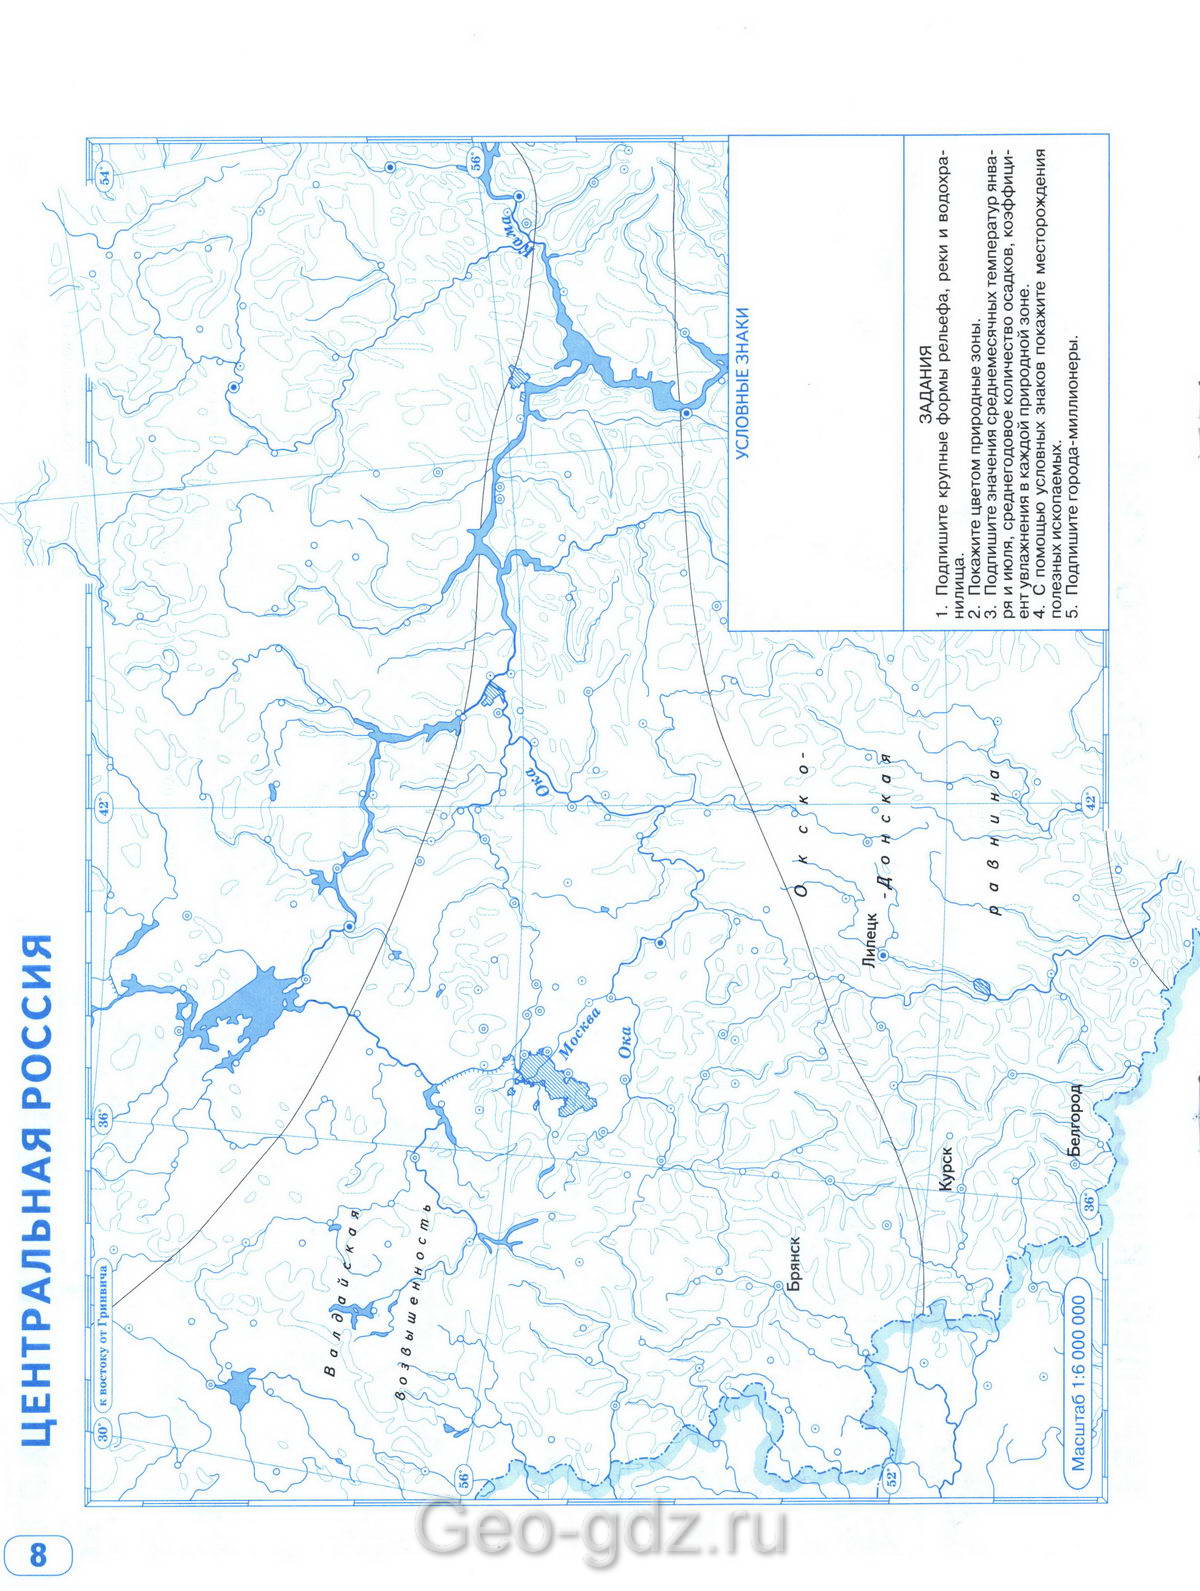 Центральная Россия - контурная карта по географии 8 класс стр 8 - Решебник